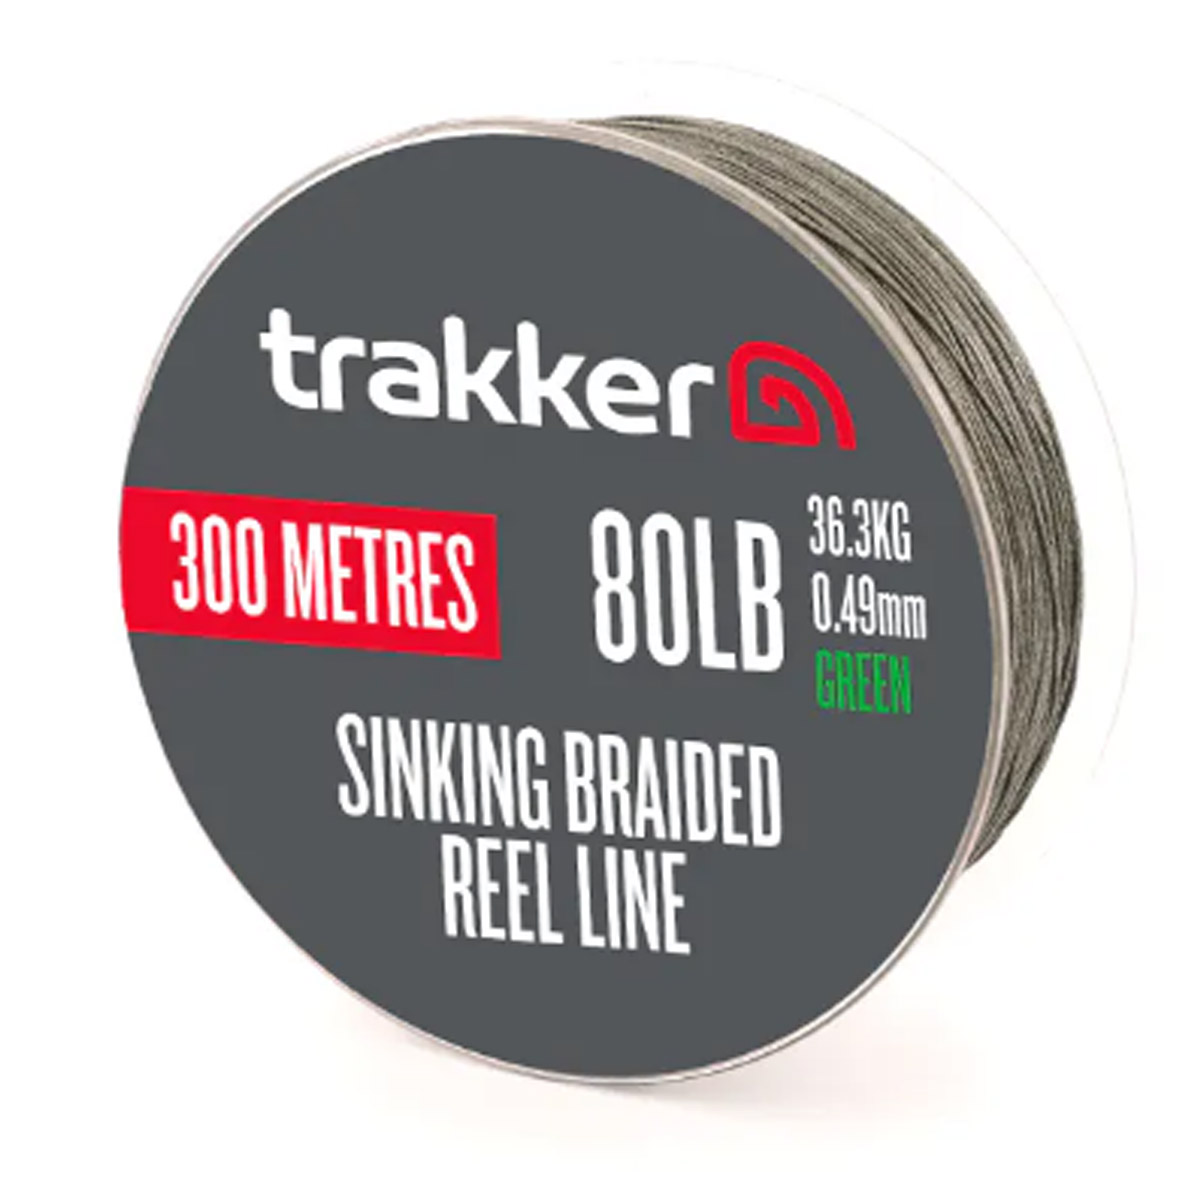 Trakker Sinking Braid Reel Line